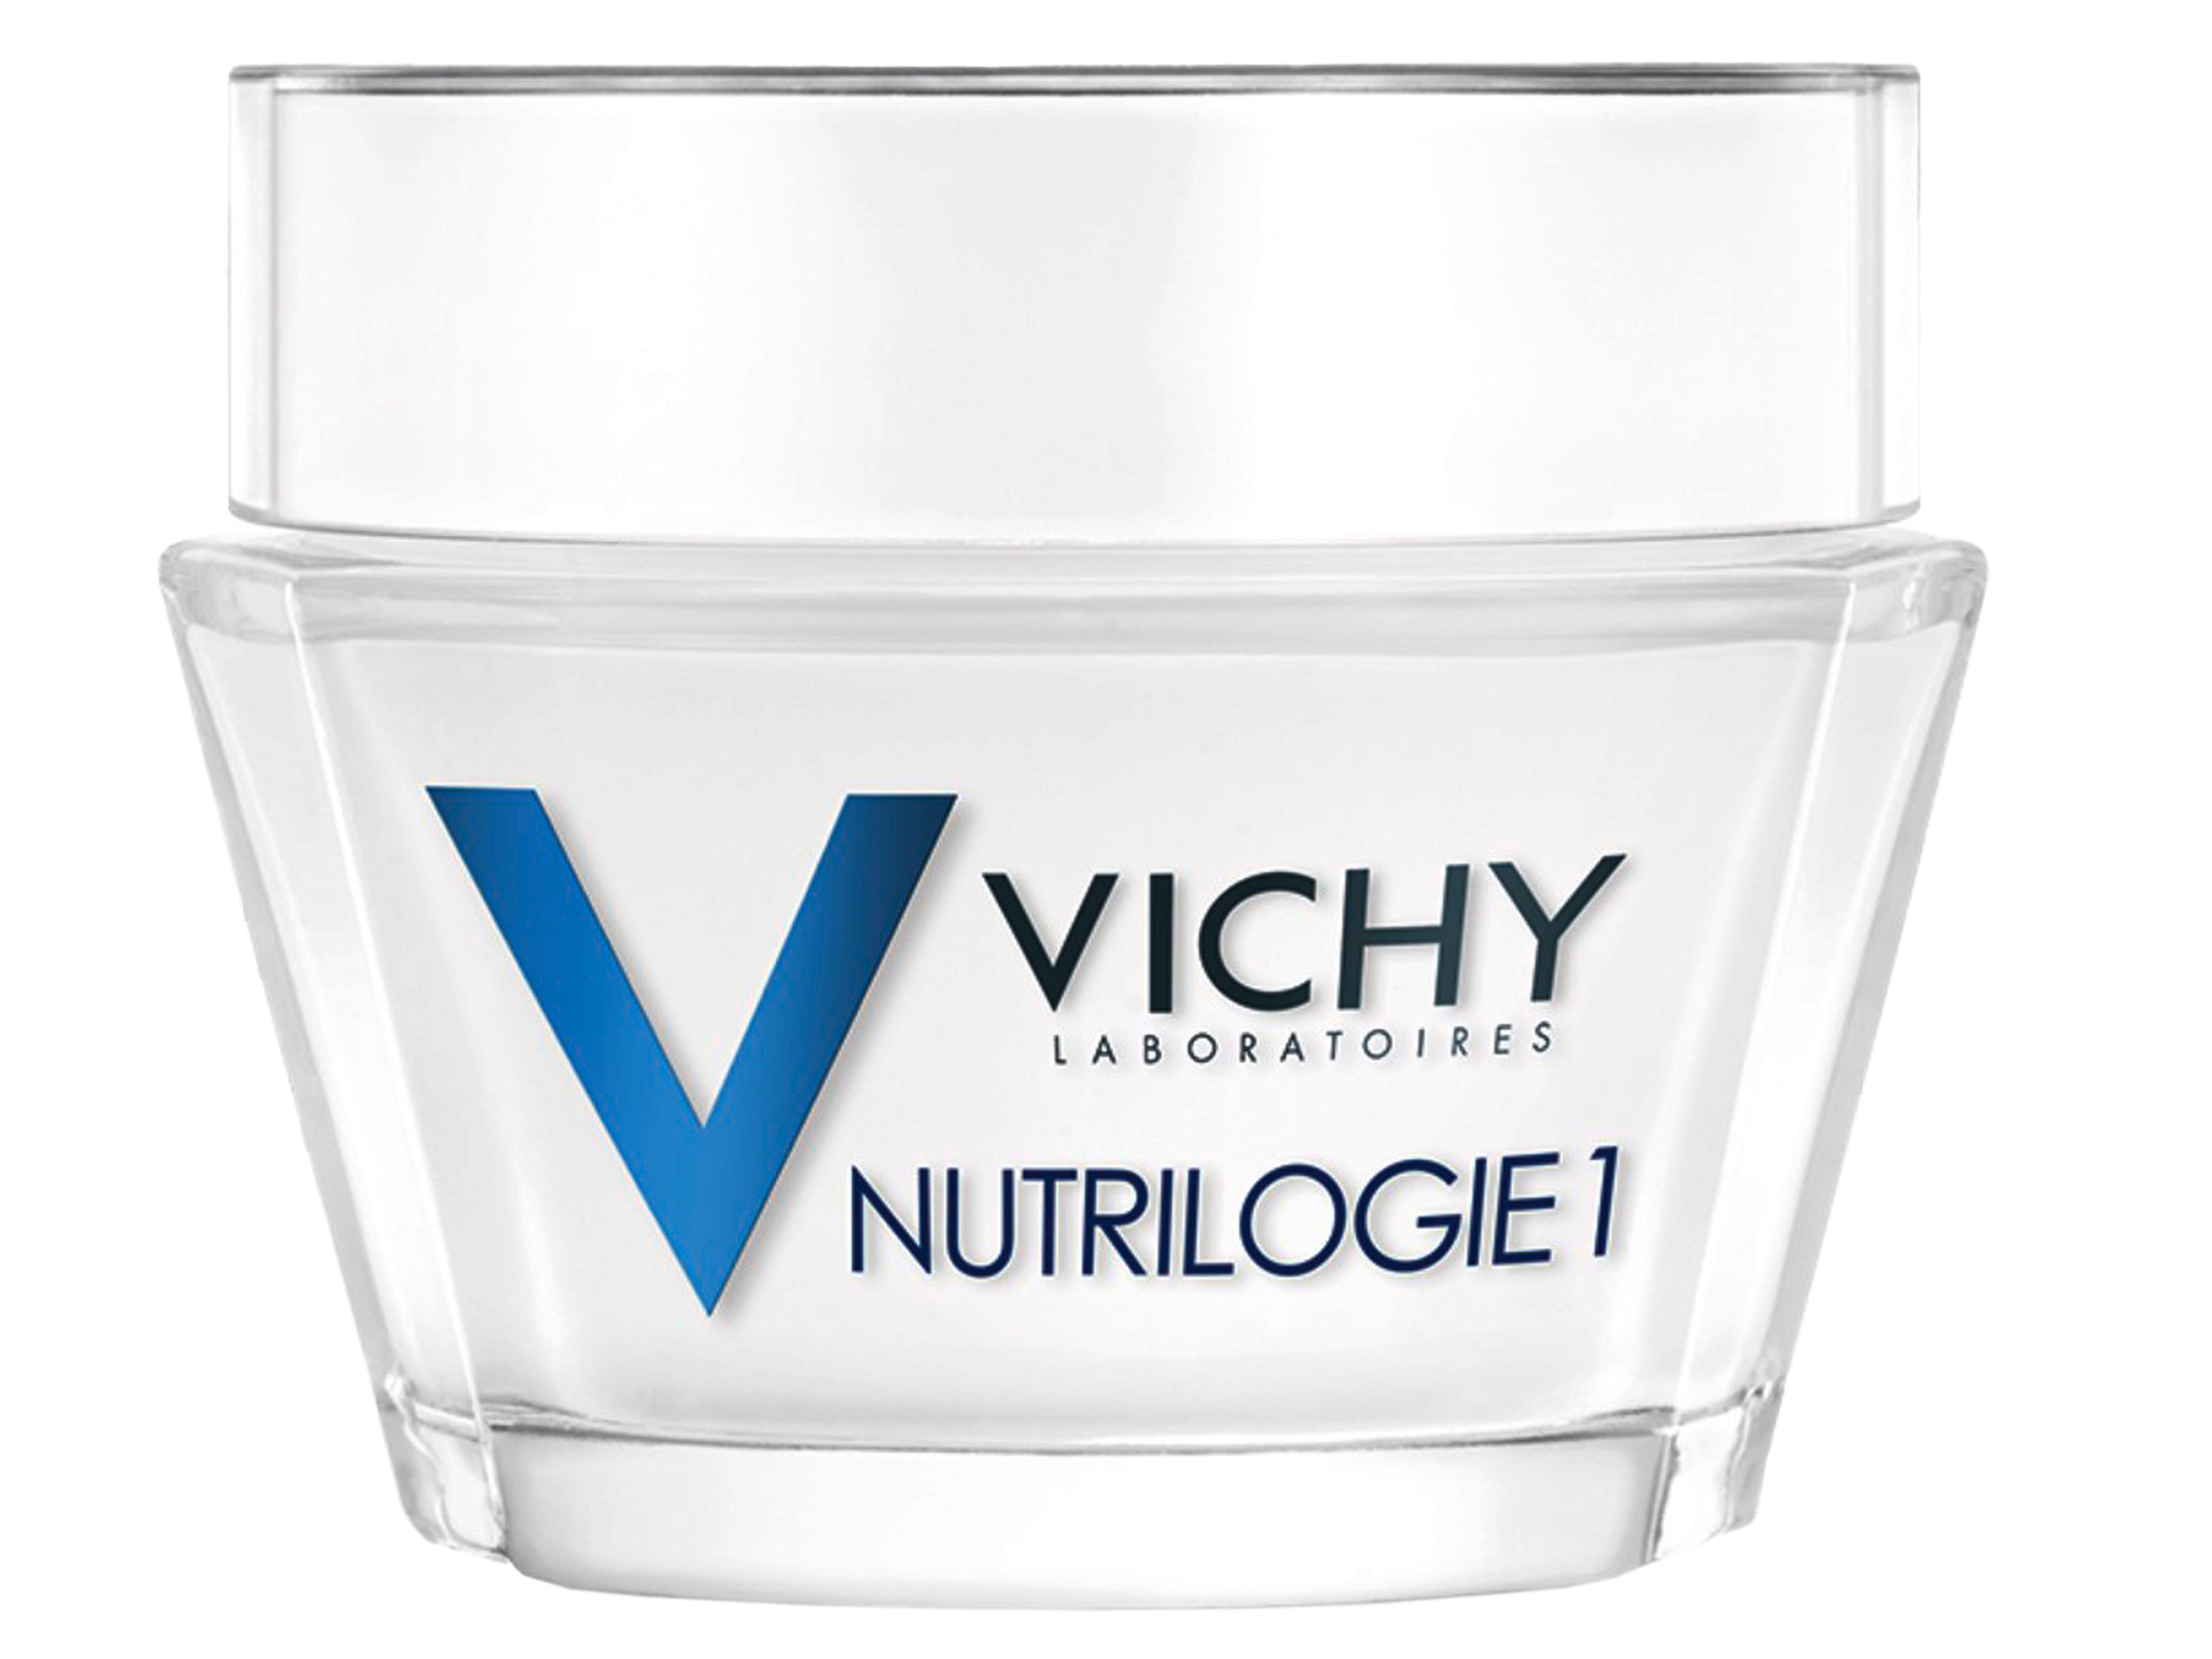 Vichy Nutrilogie 1, 50 ml